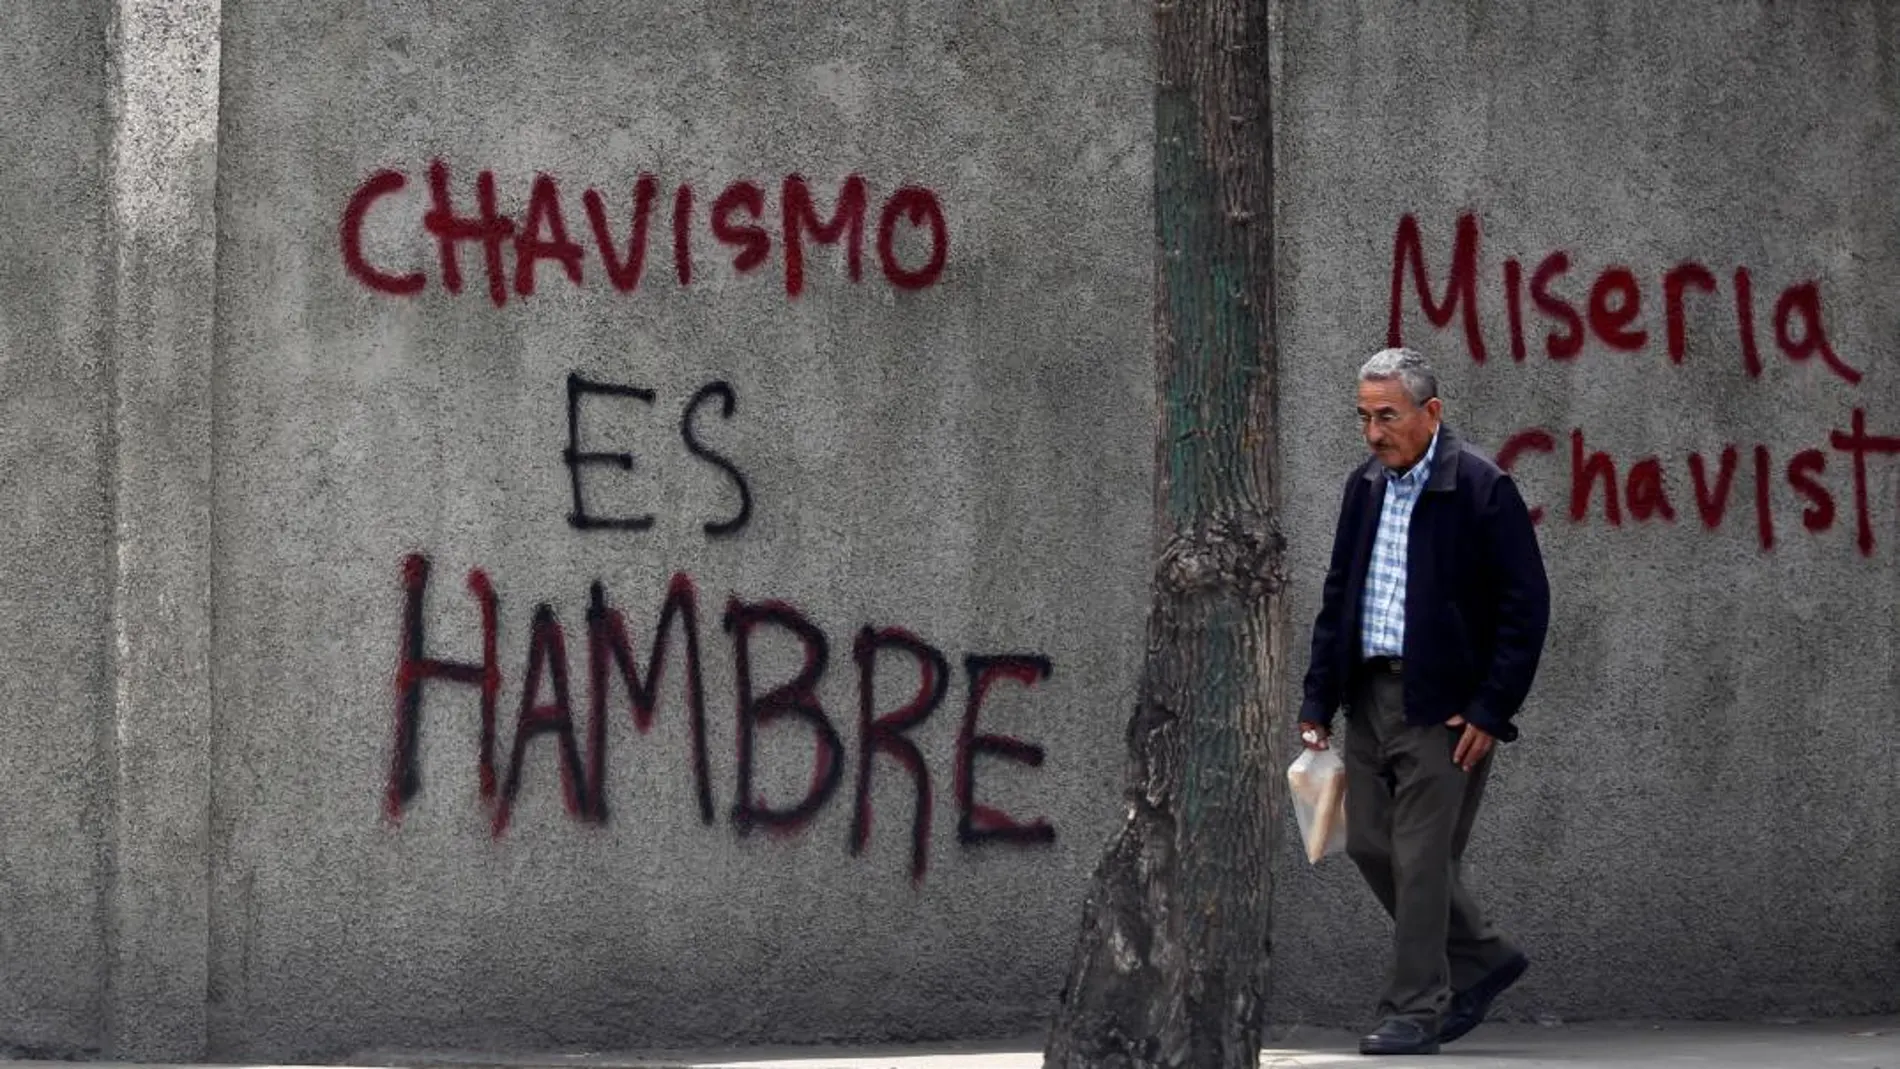 En la imagen, un grafiti de Caracas que reza: «Chavismo es hambre» | Fuente: Reuters